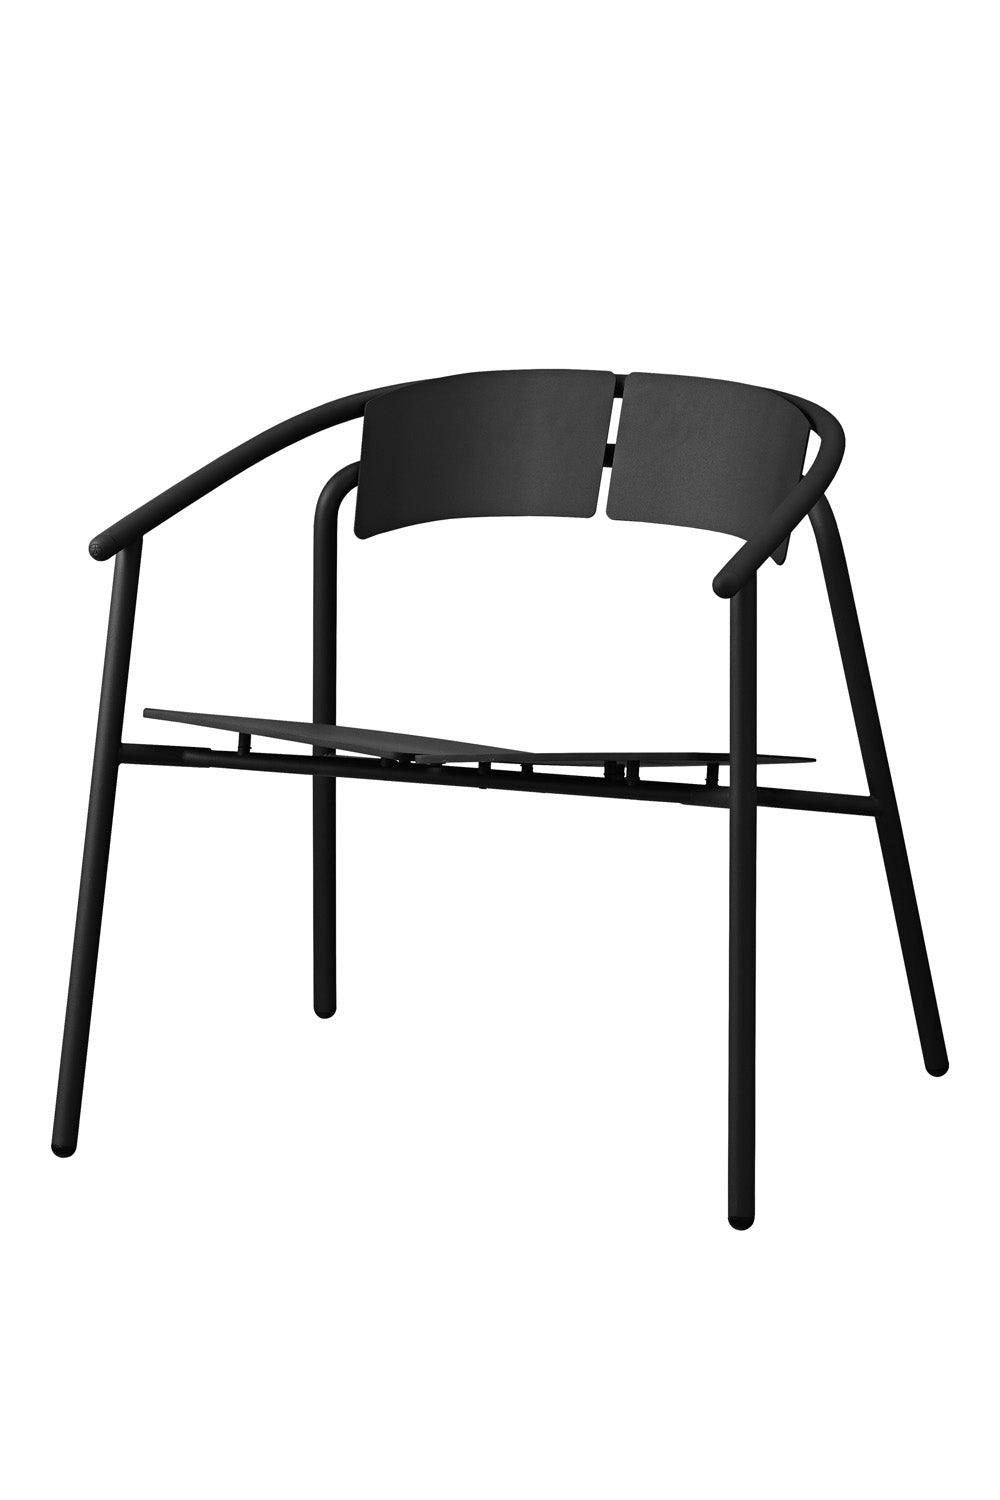 NOVO scaun lounge negru / negru, L71,1xW68xH71,9 CM, AYTM - PARIS14A.RO